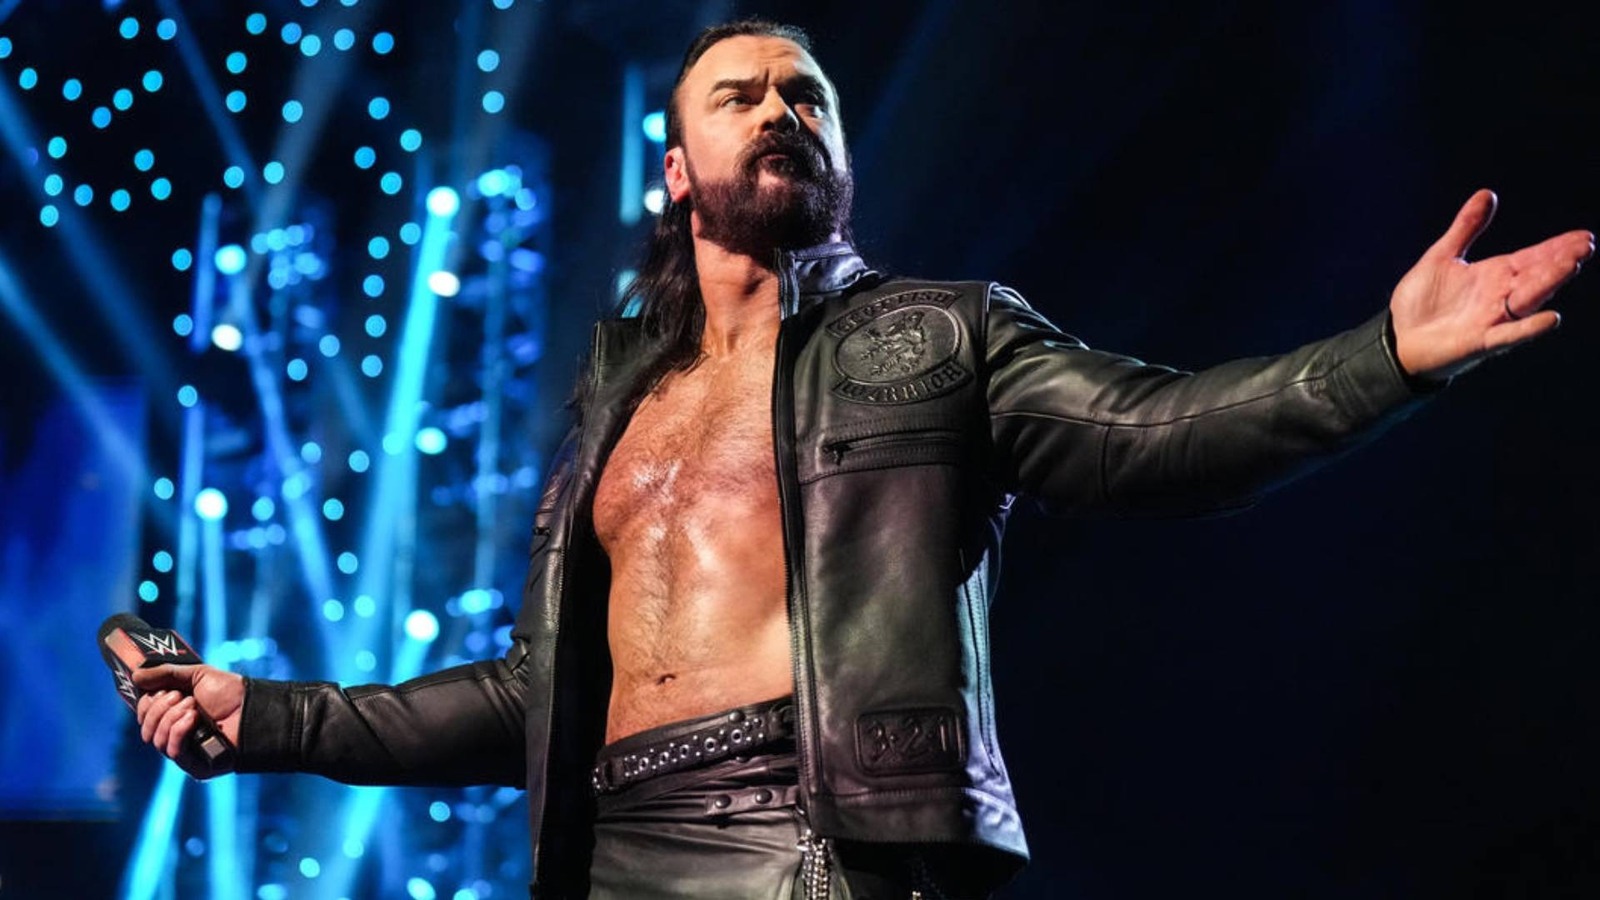 Se informa que Drew McIntyre sale corriendo de la arena después del evento principal de WWE Survivor Series